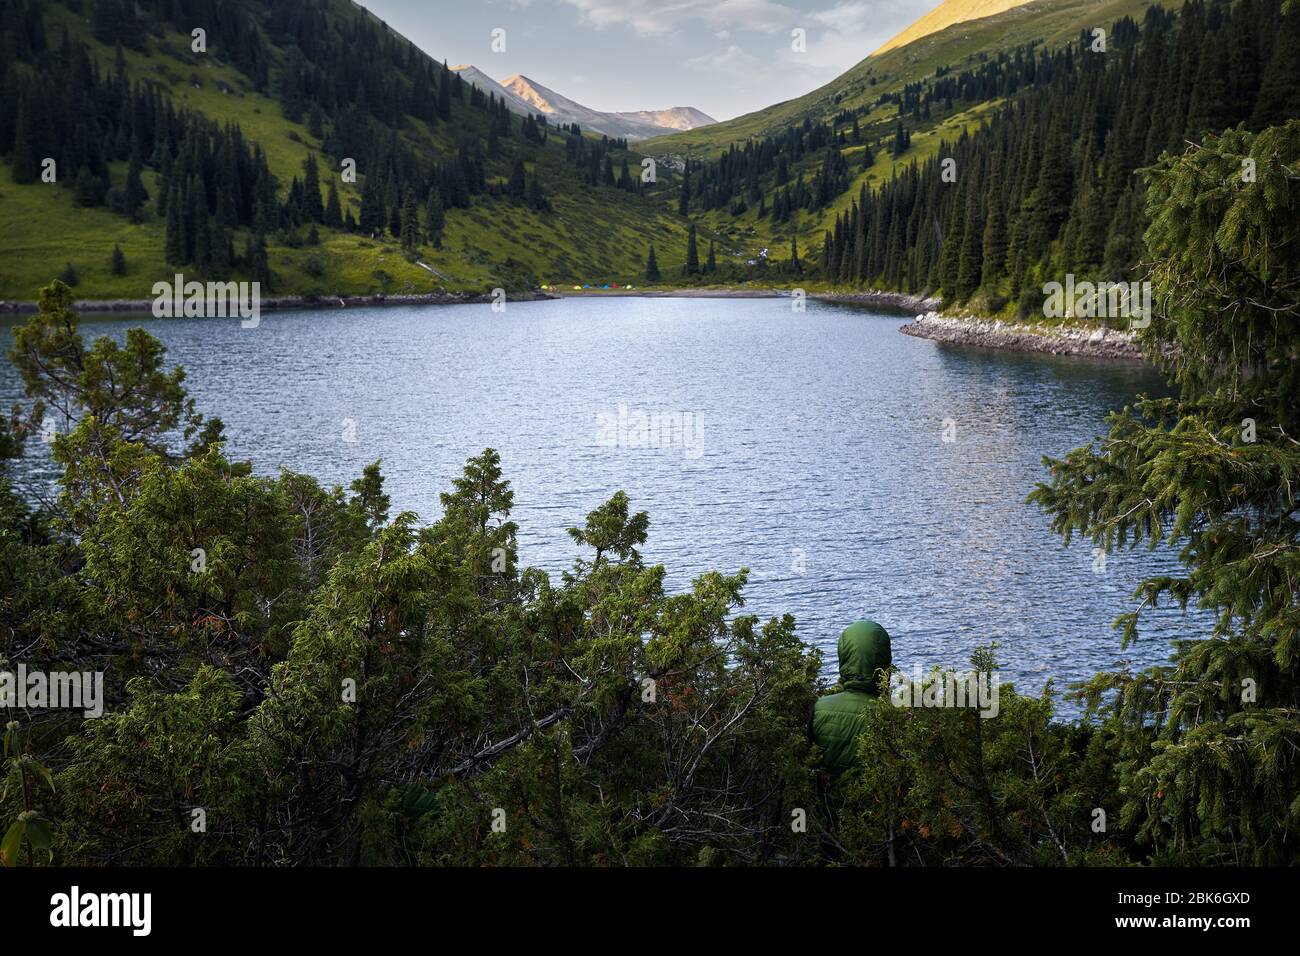 Der Mensch in Grün hoodie versteckt sich Bush am Bergsee Kolsai in Kasachstan und Zentralasien Stockfoto